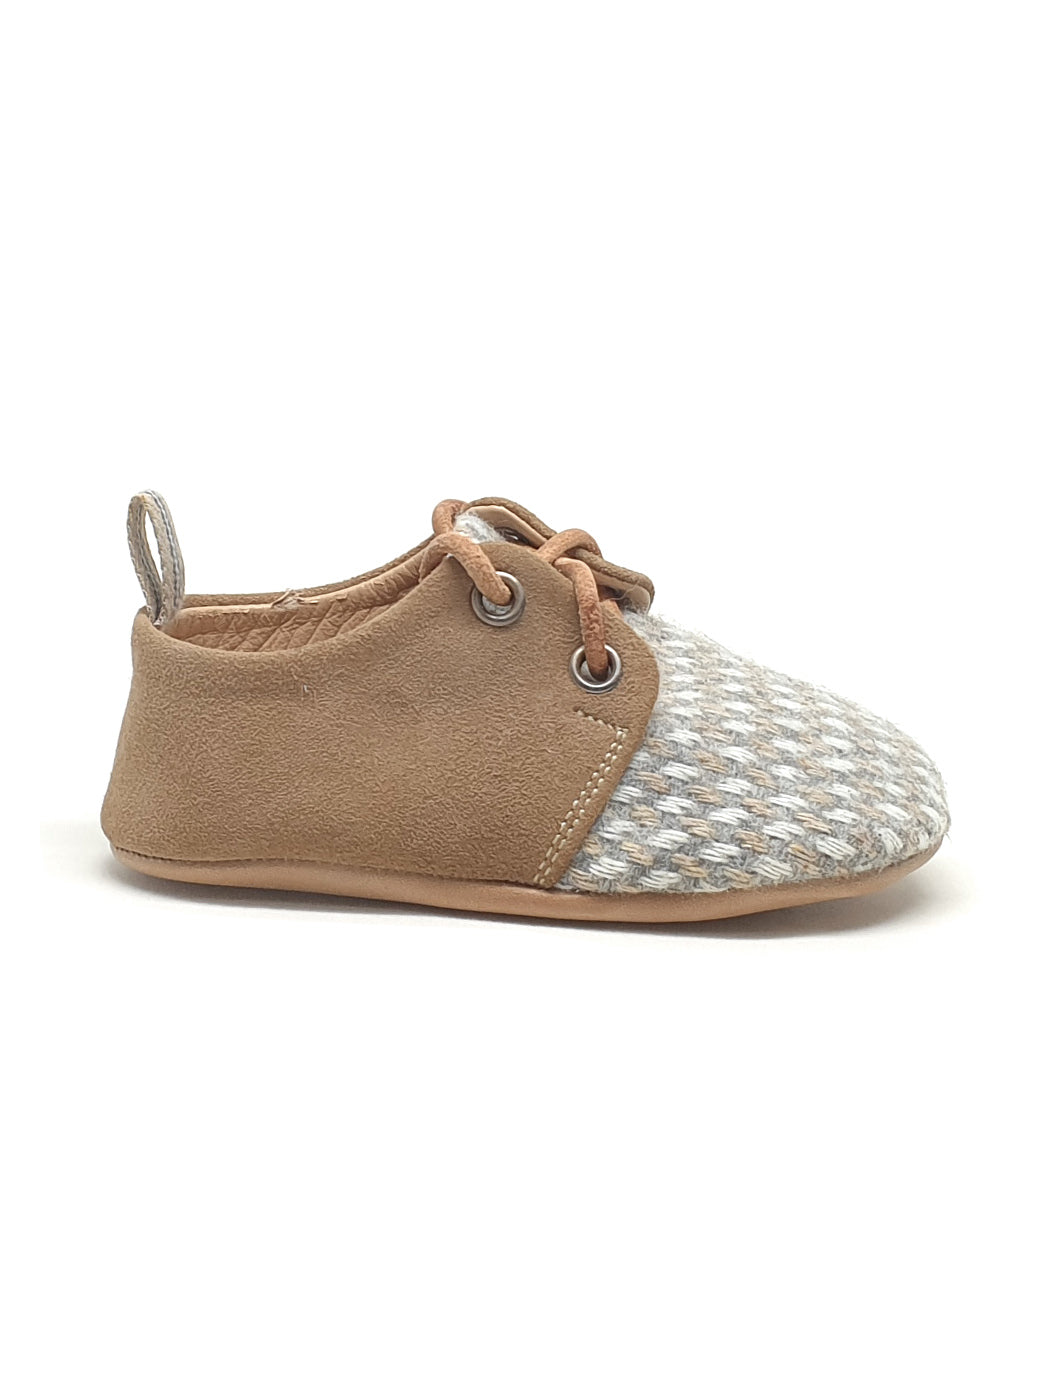 Baby's Shoe for boy - ERNESTO Beige